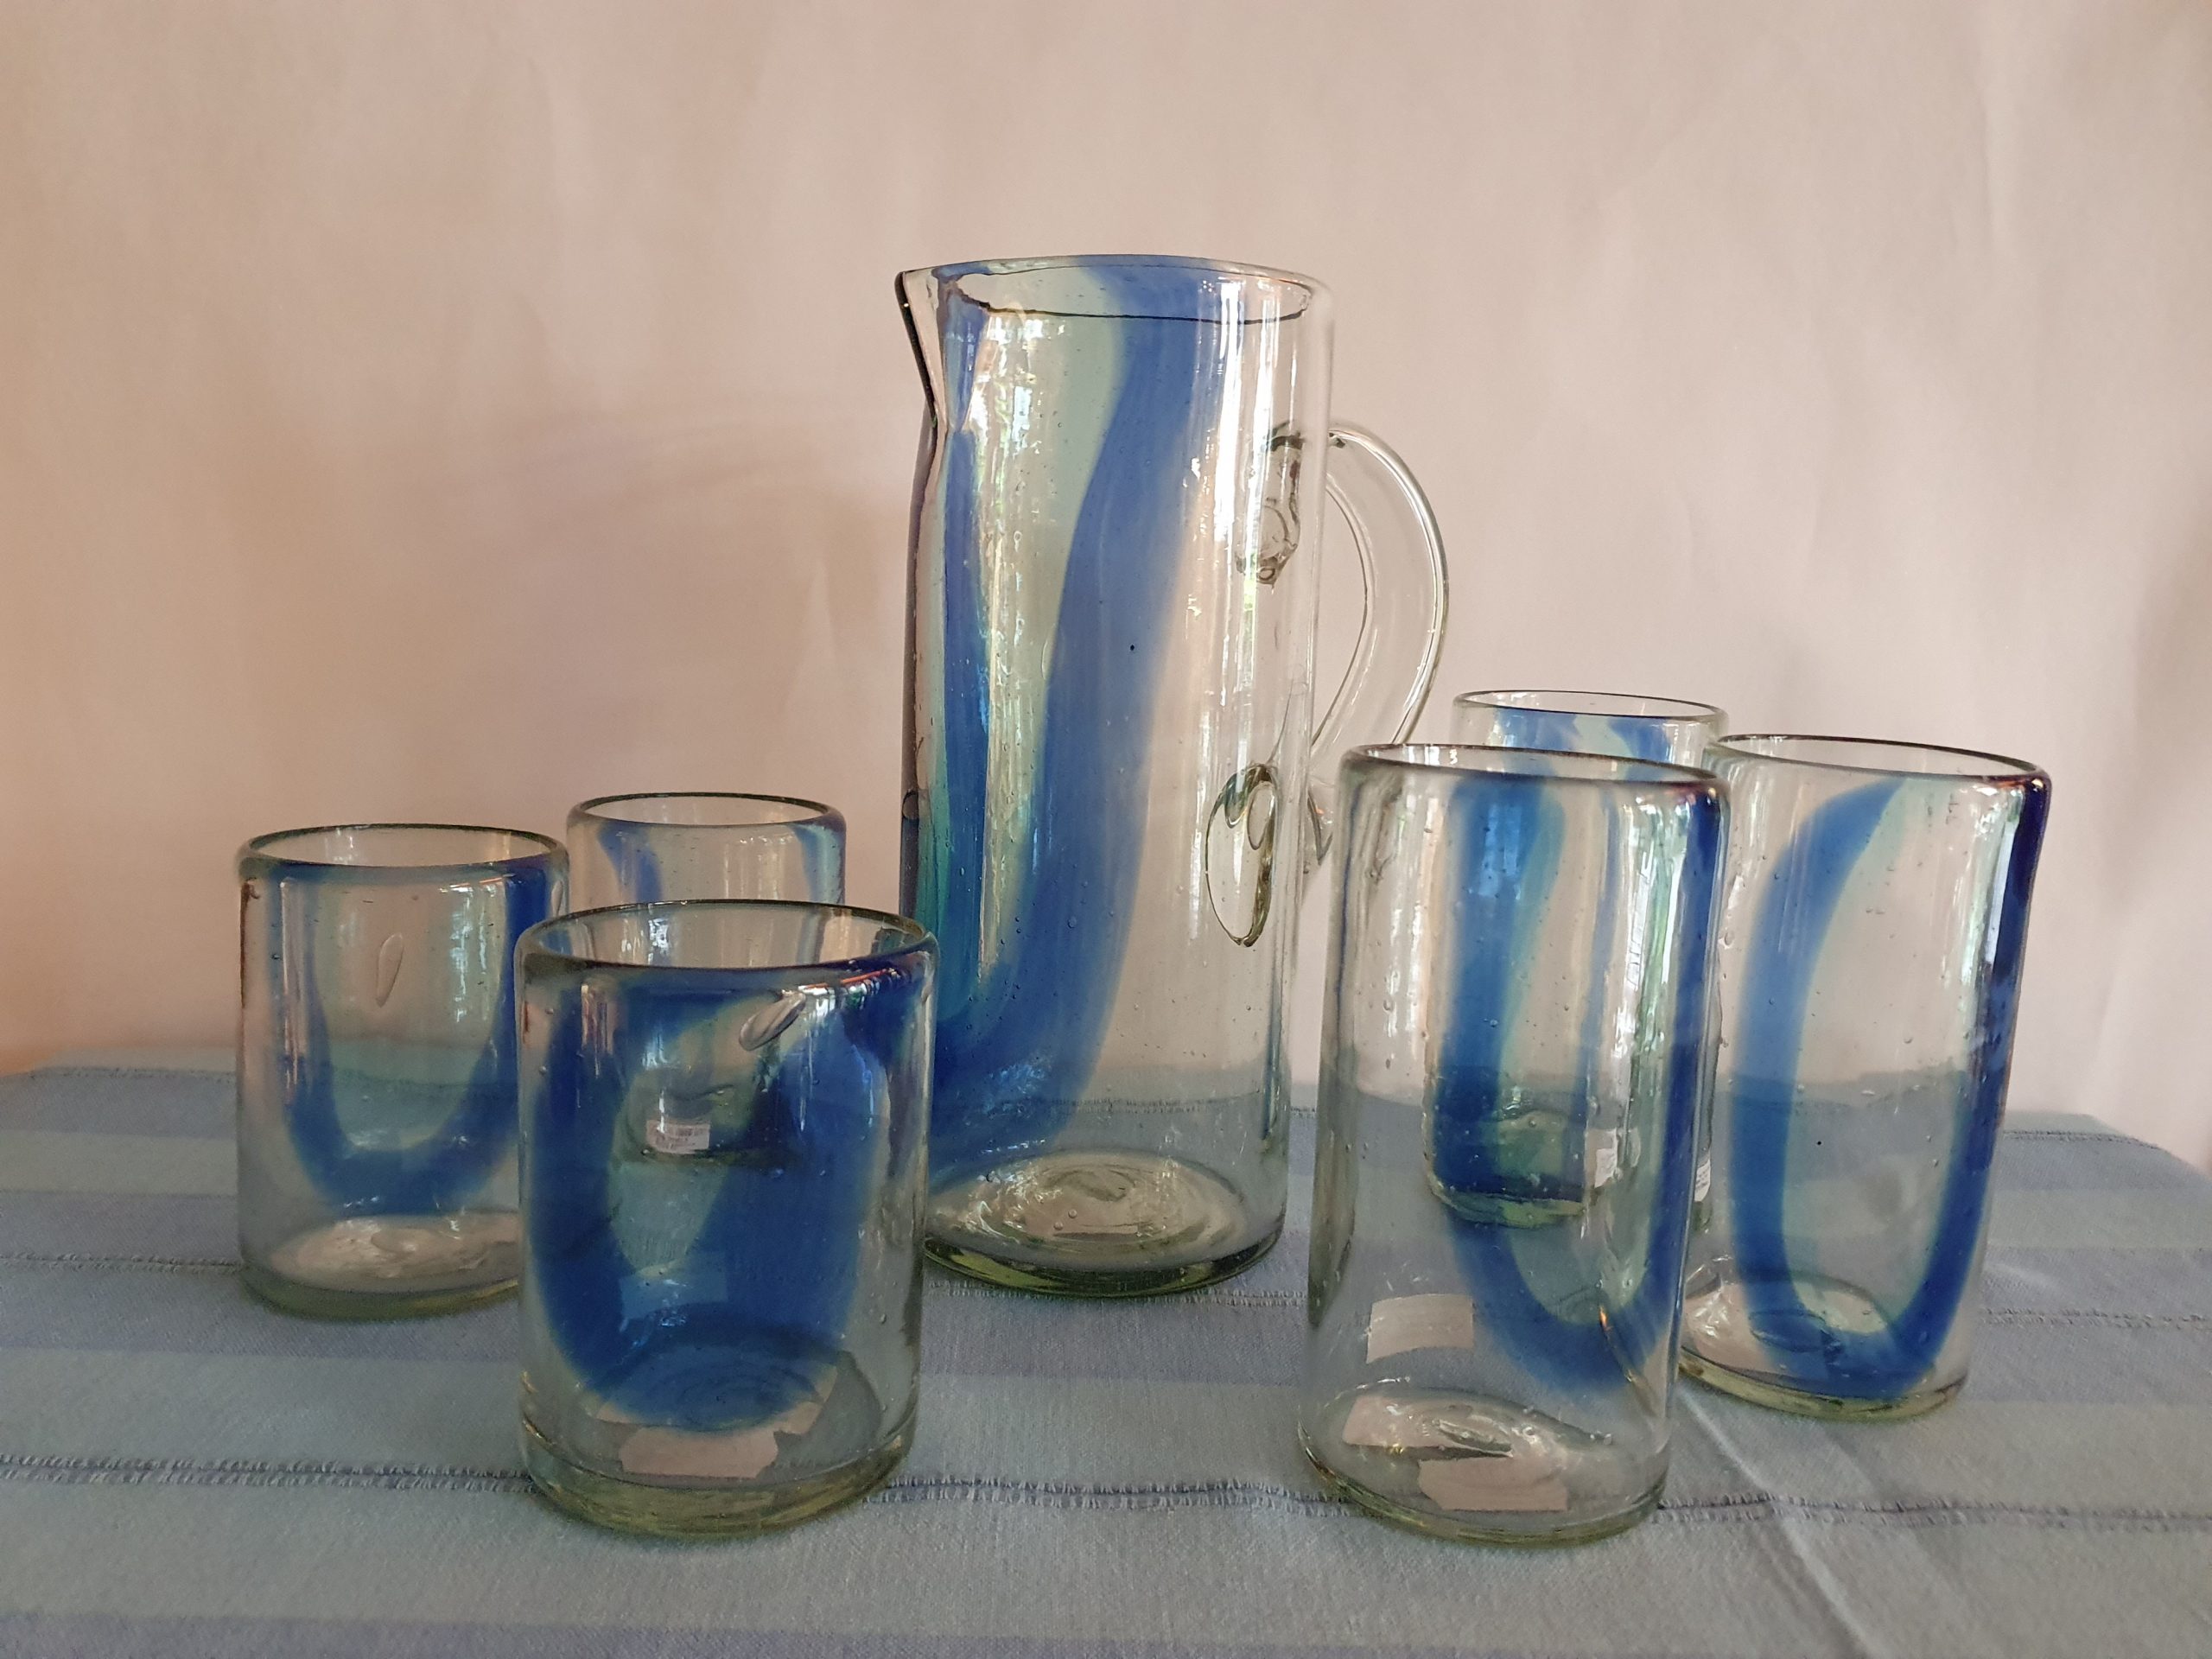 Das Bild zeigt einen Glaskrug und Gläser mit blauem Muster